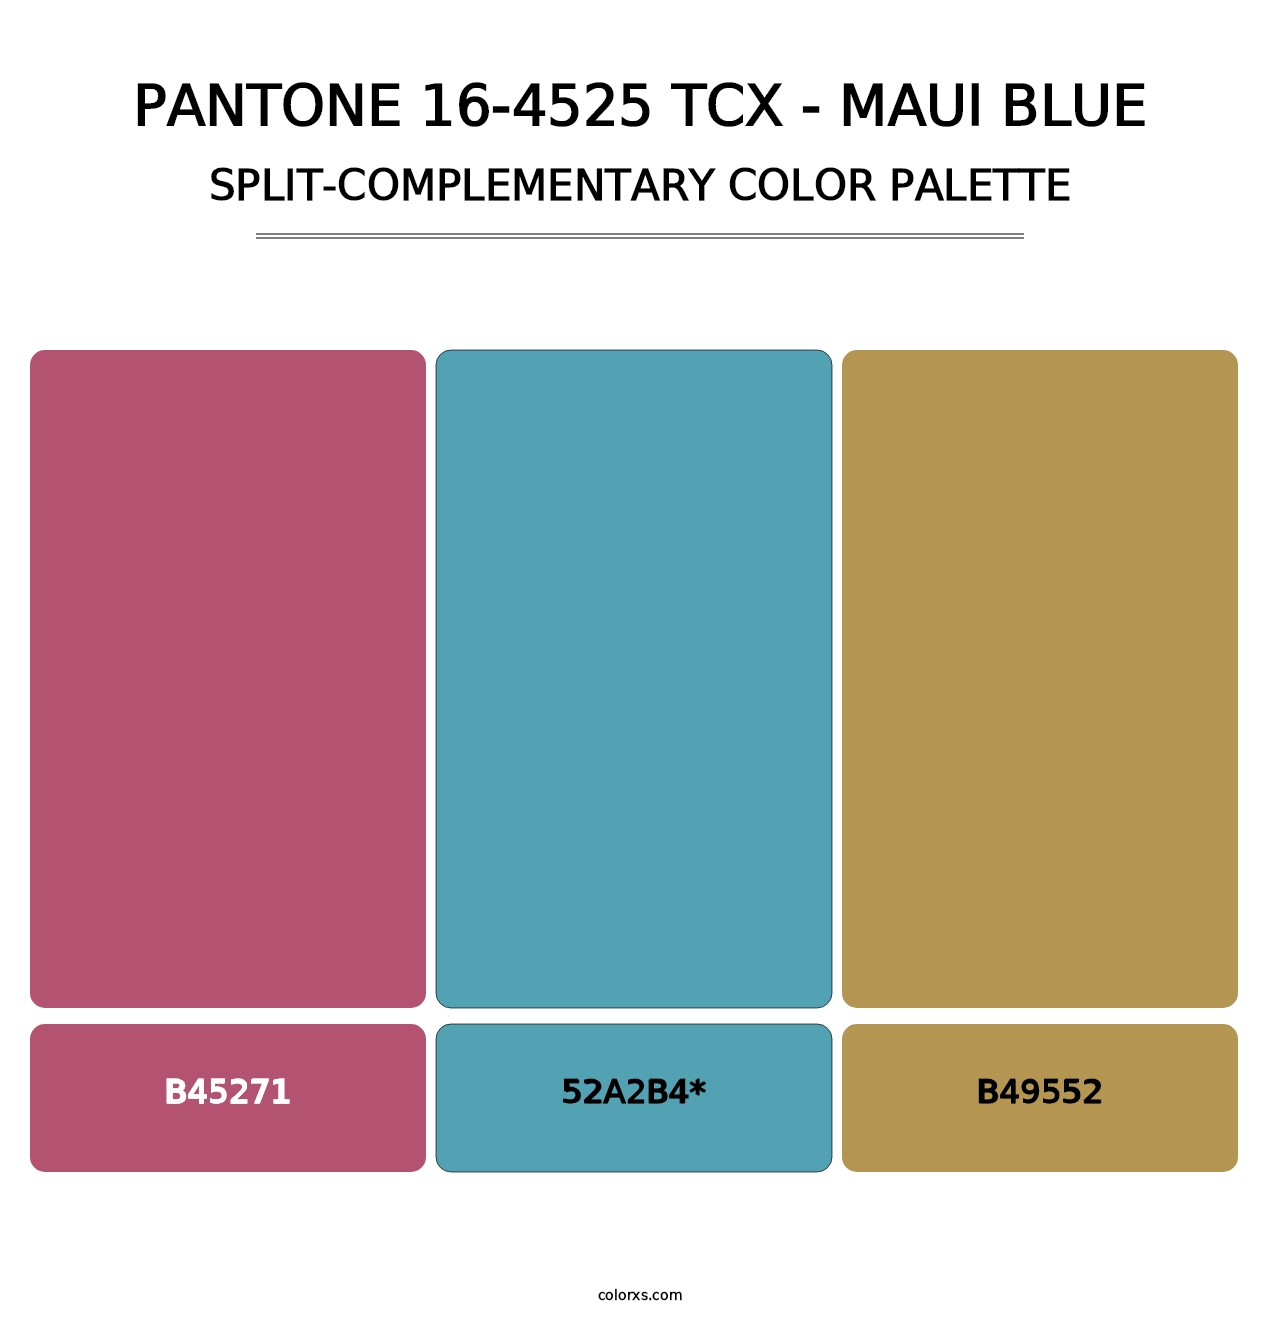 PANTONE 16-4525 TCX - Maui Blue - Split-Complementary Color Palette